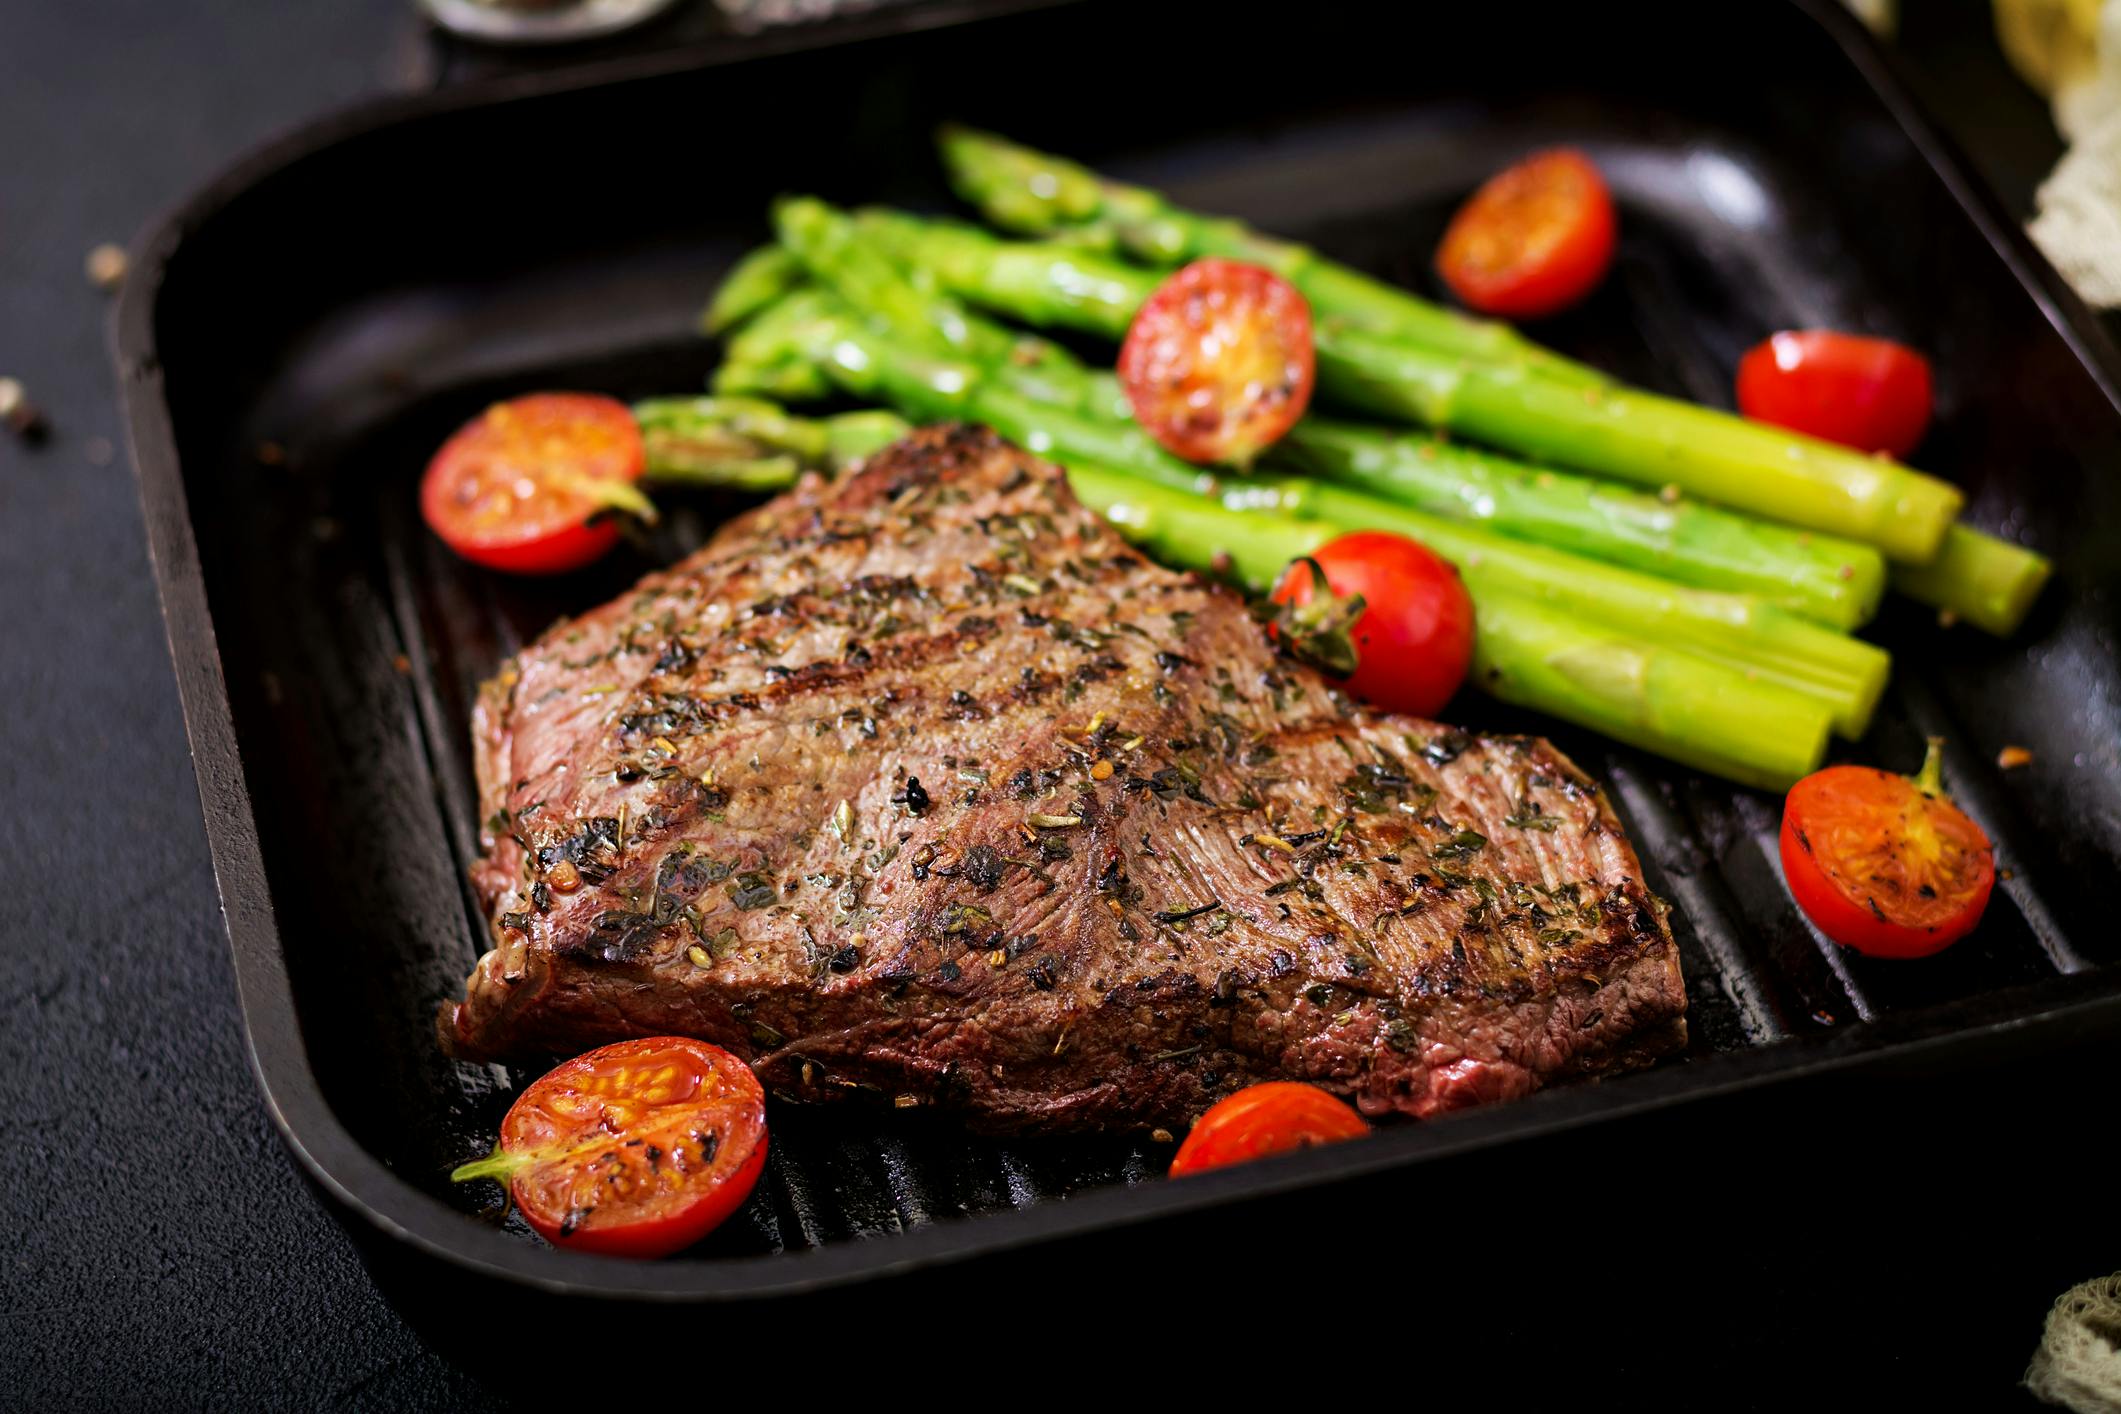 Gusseisenpfanne in der Steak und Gemüse liegen